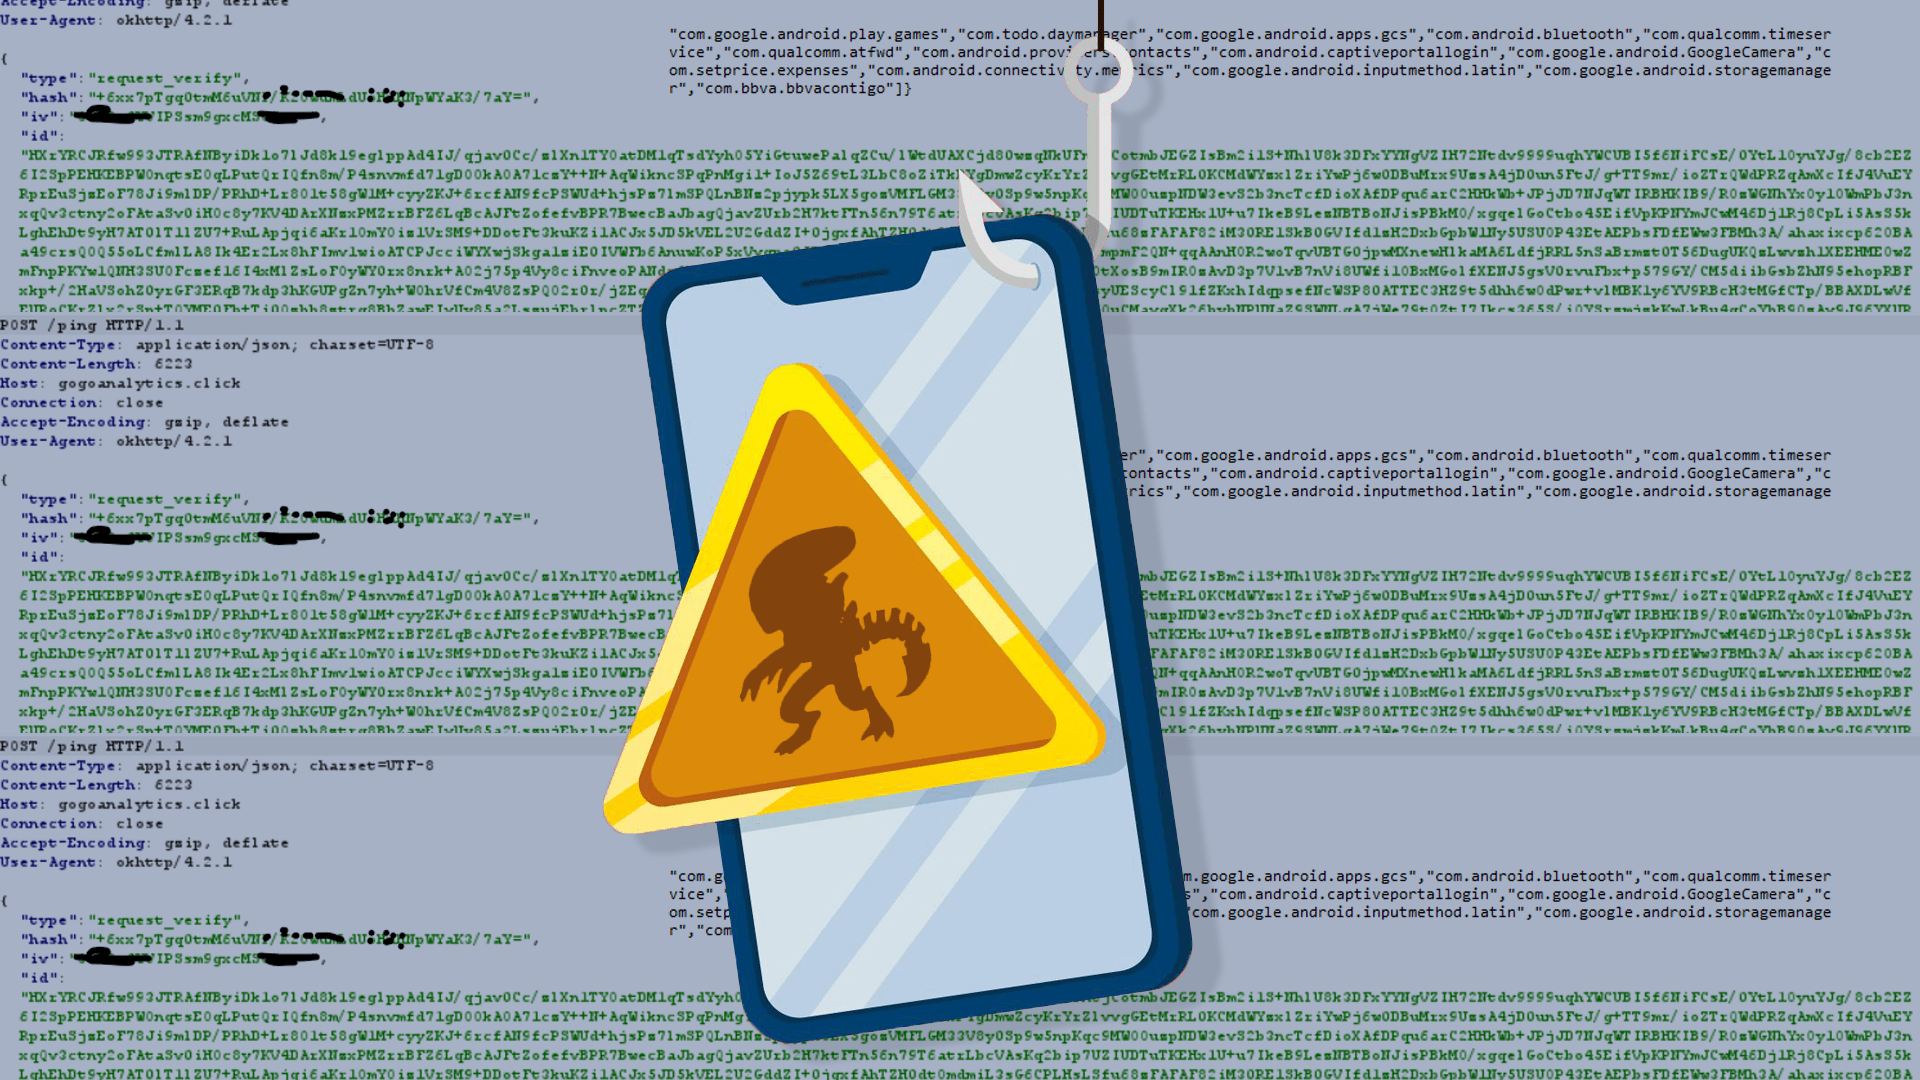 Detección de malware en archivos comprimidos con contraseña